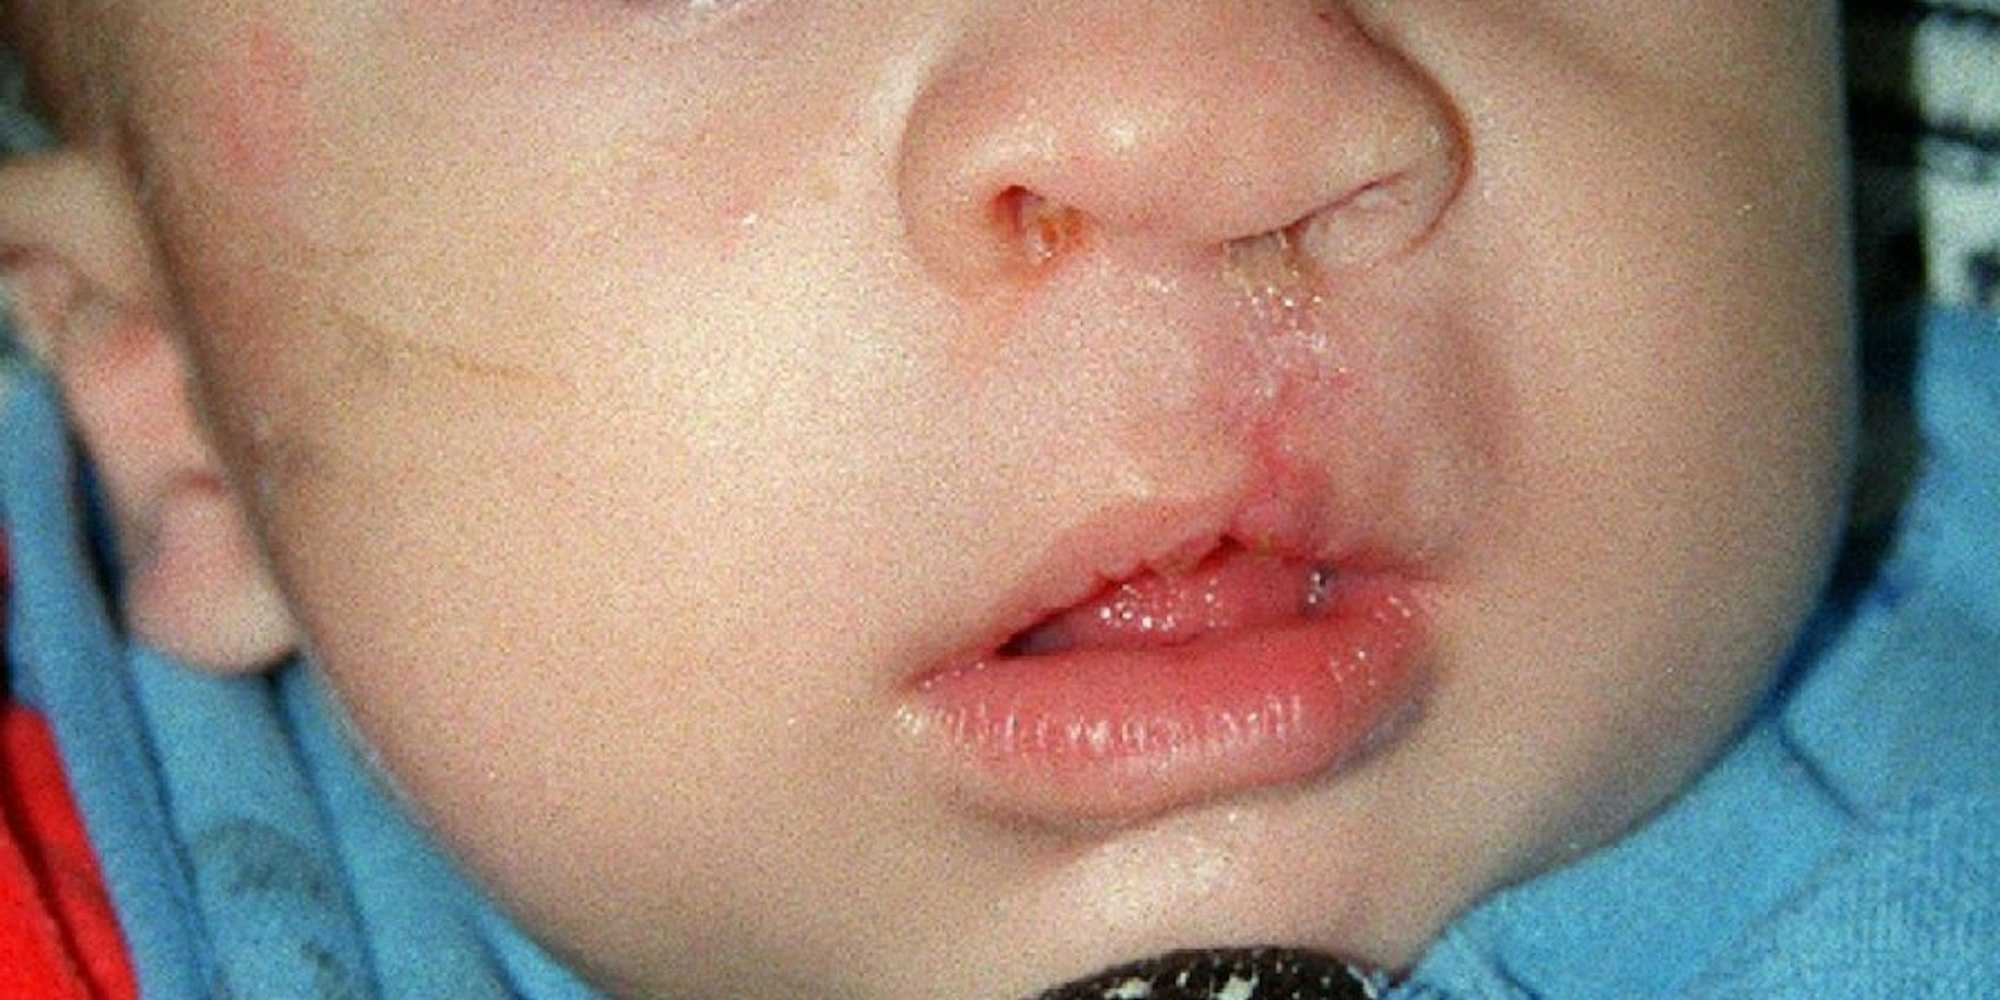 Die „Hasenscharte“ gehört zu den häufigsten angeborenen Fehlbildungen, die heute jedoch operativ beseitigt werden können. Das Foto zeigt ein bereits operiertes Kind.